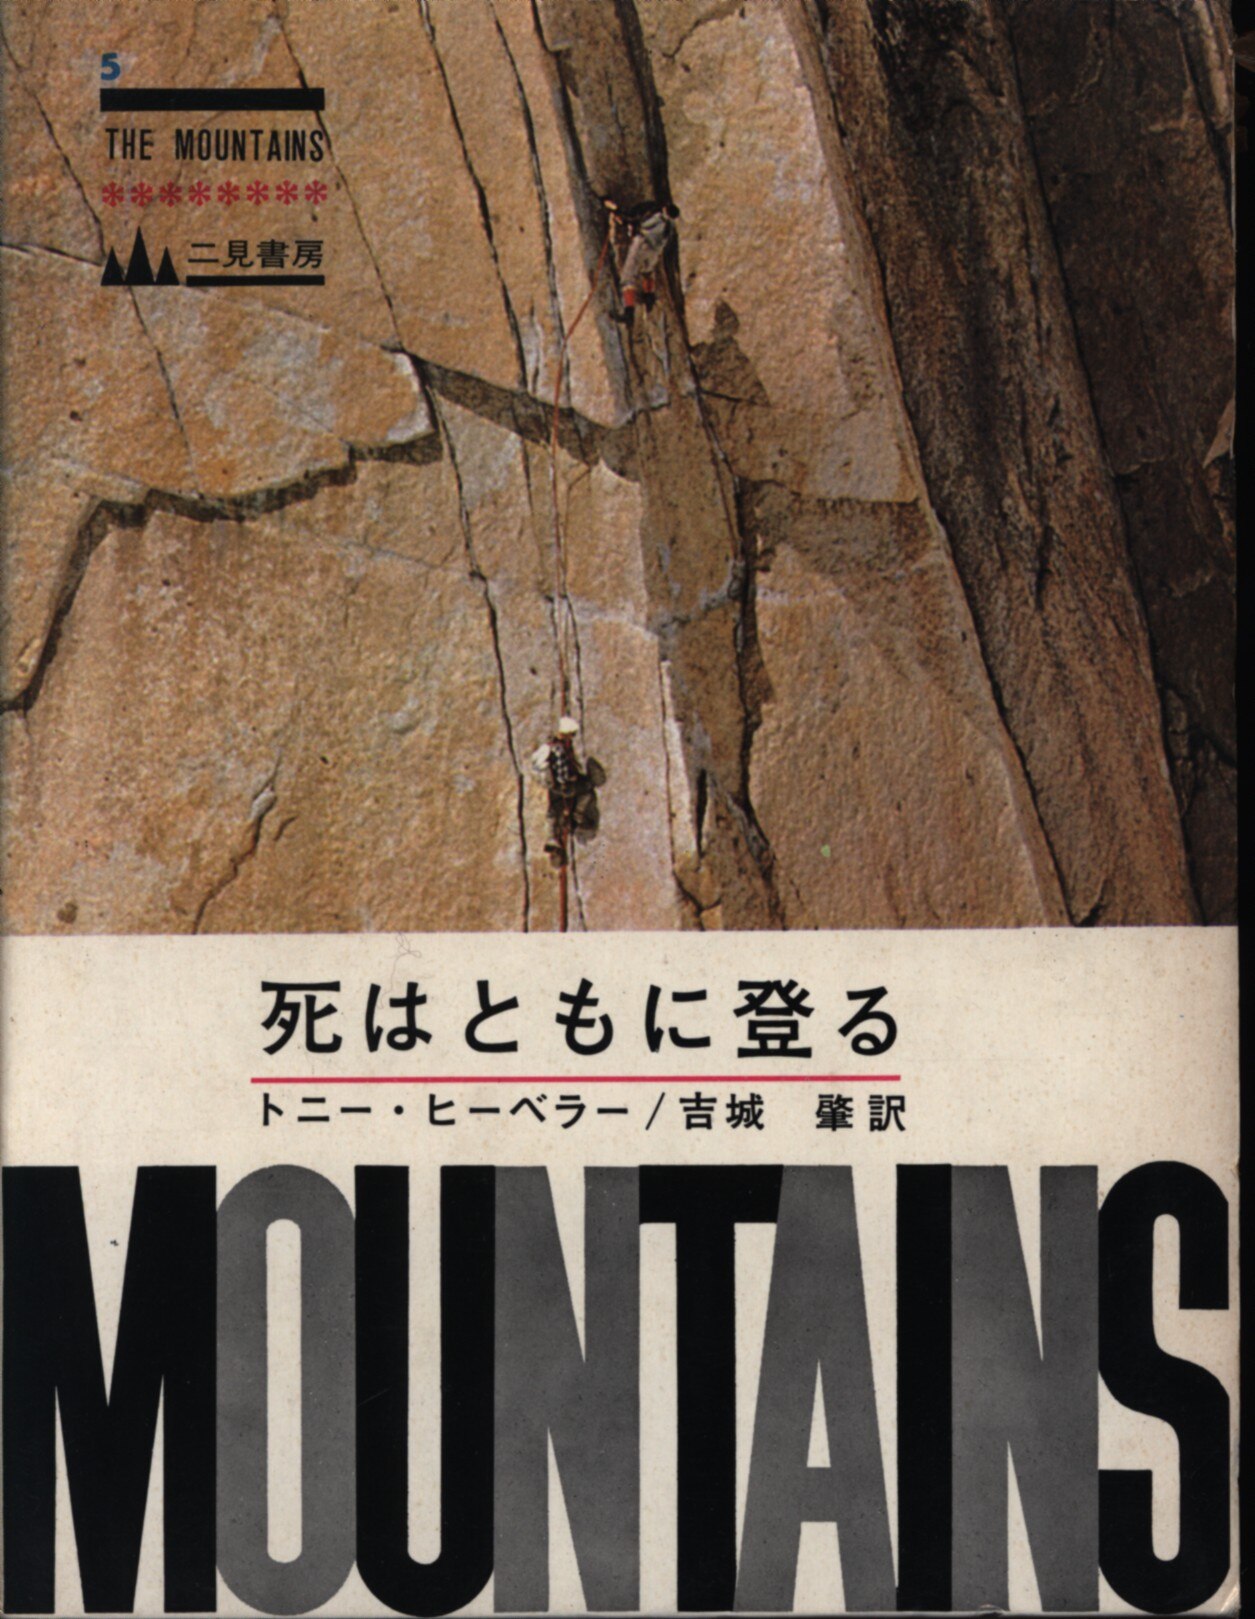 死はともに登る (1966年) (The mountains〈No.5〉)